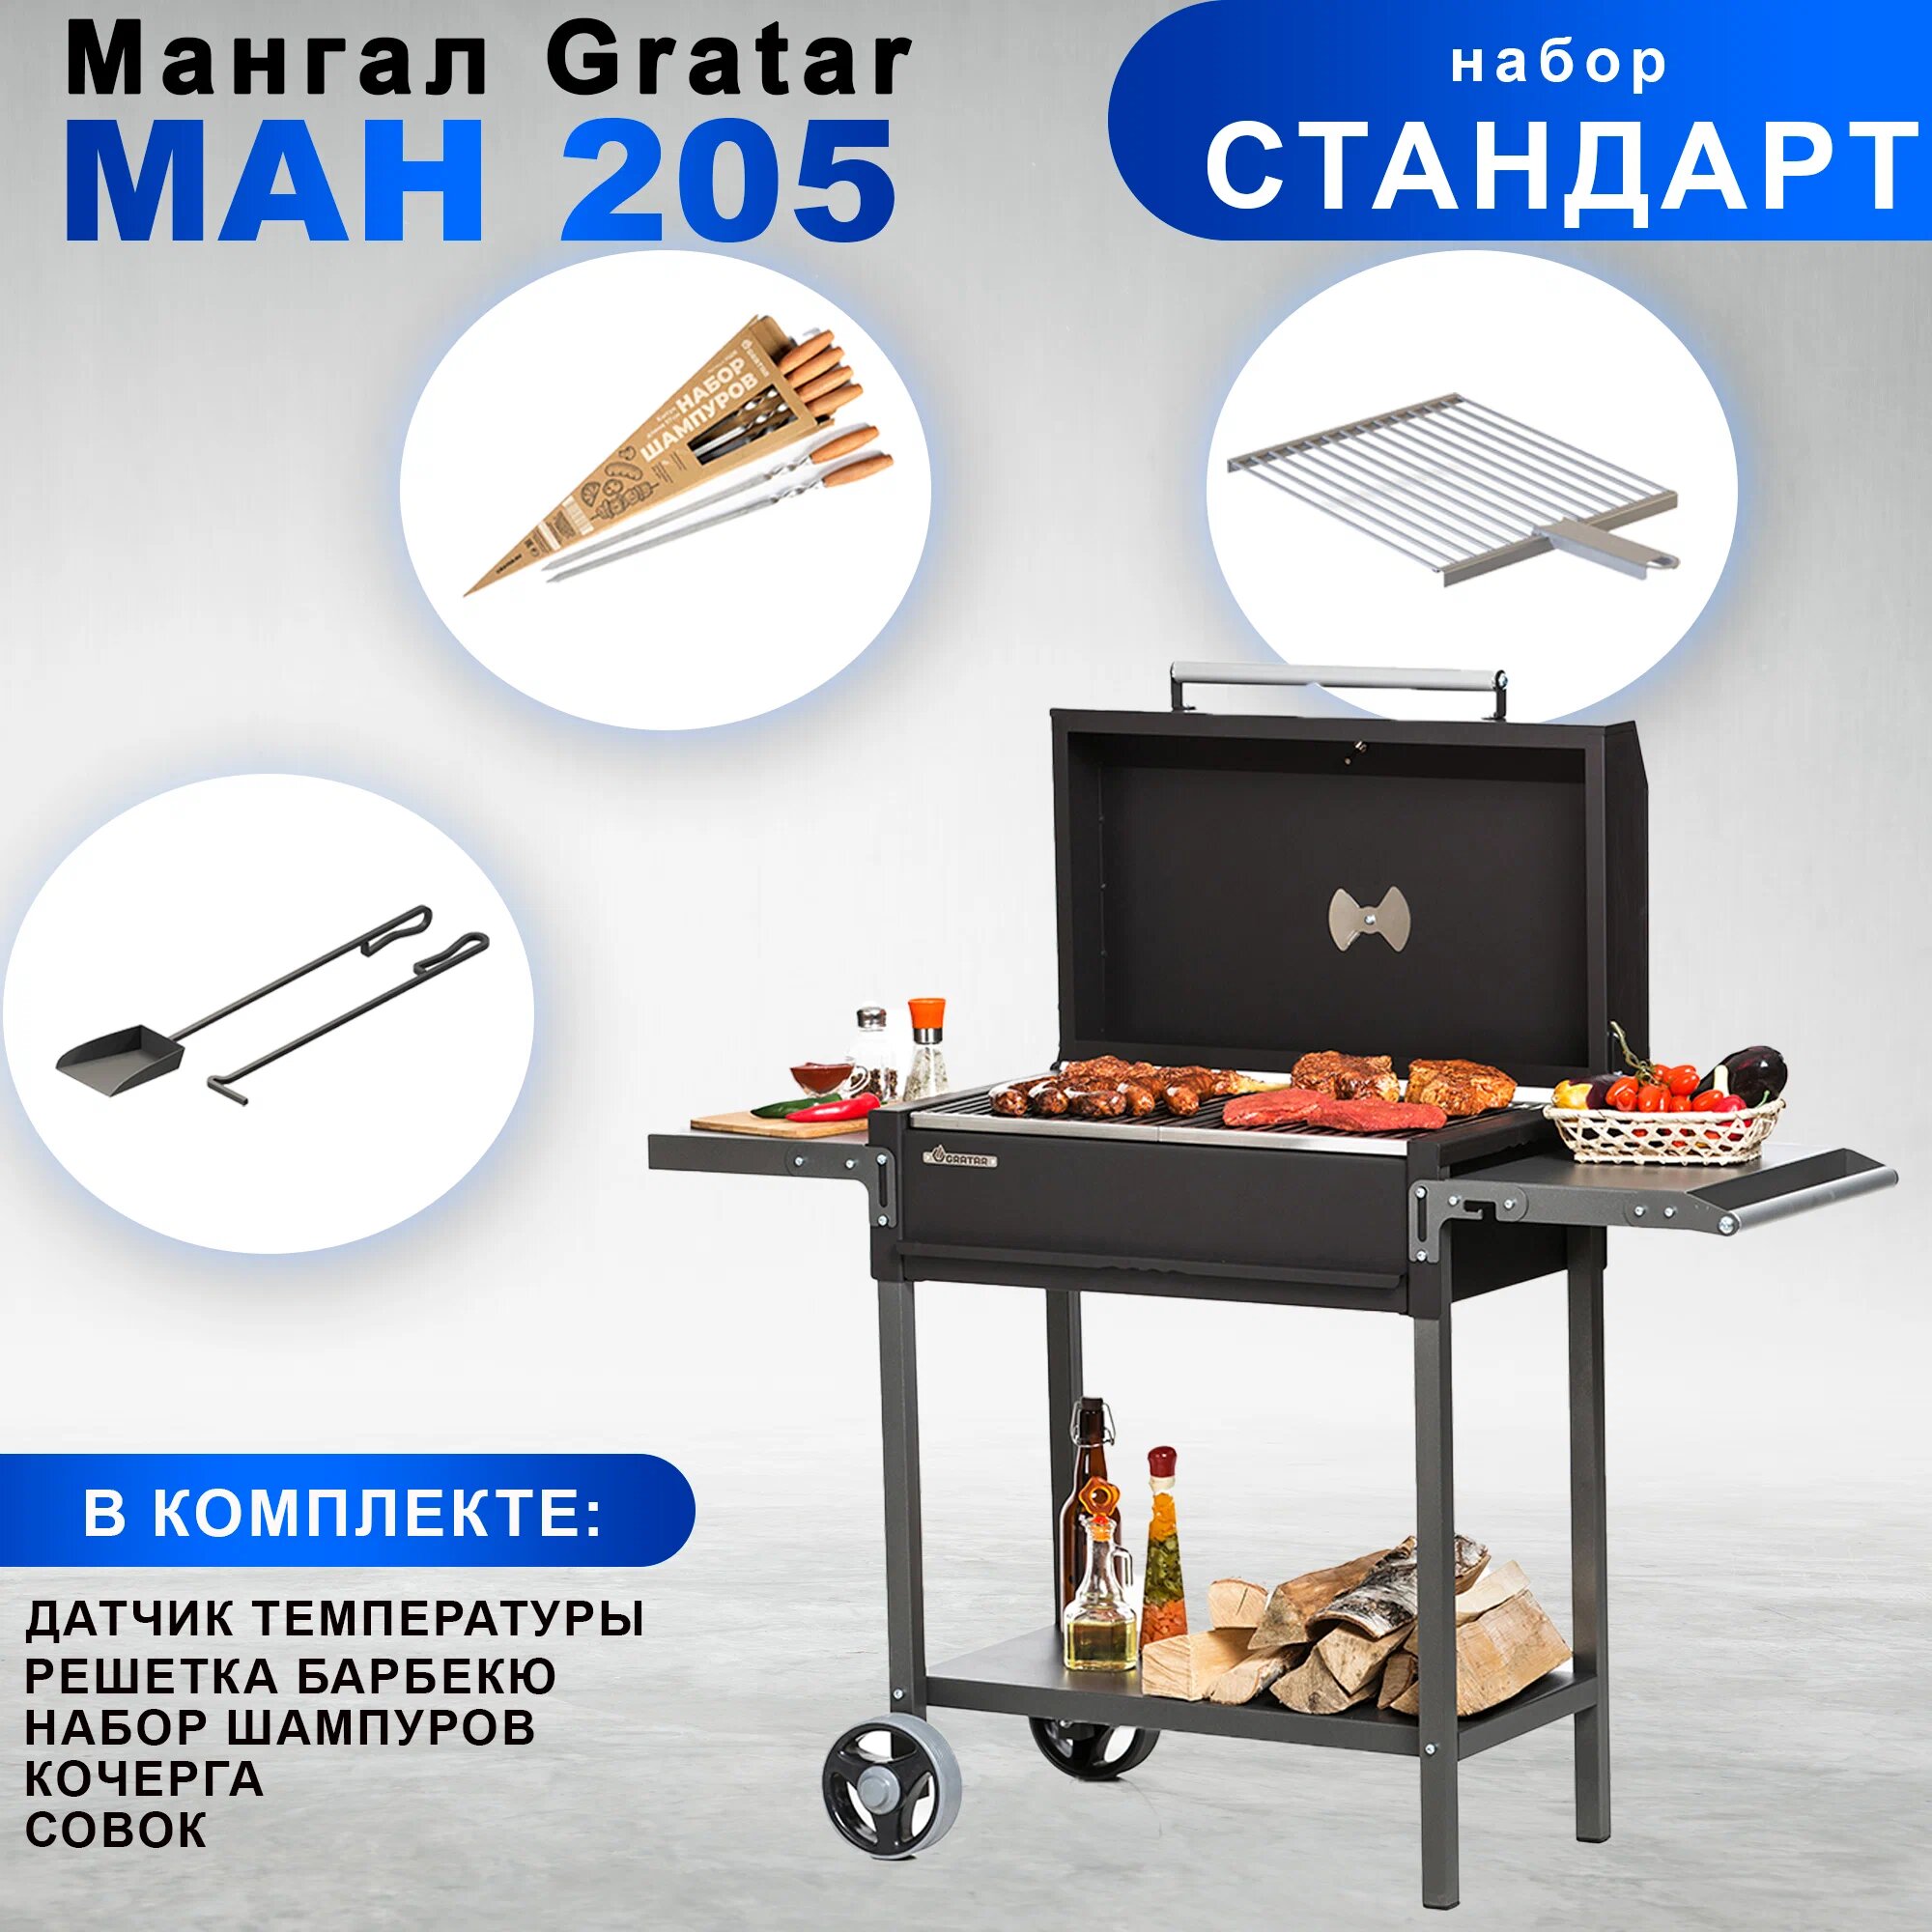 Гриль-Мангал Gratar МАН 205 с набором аксессуаров "Стандарт" + Уголь 3кг в подарок!